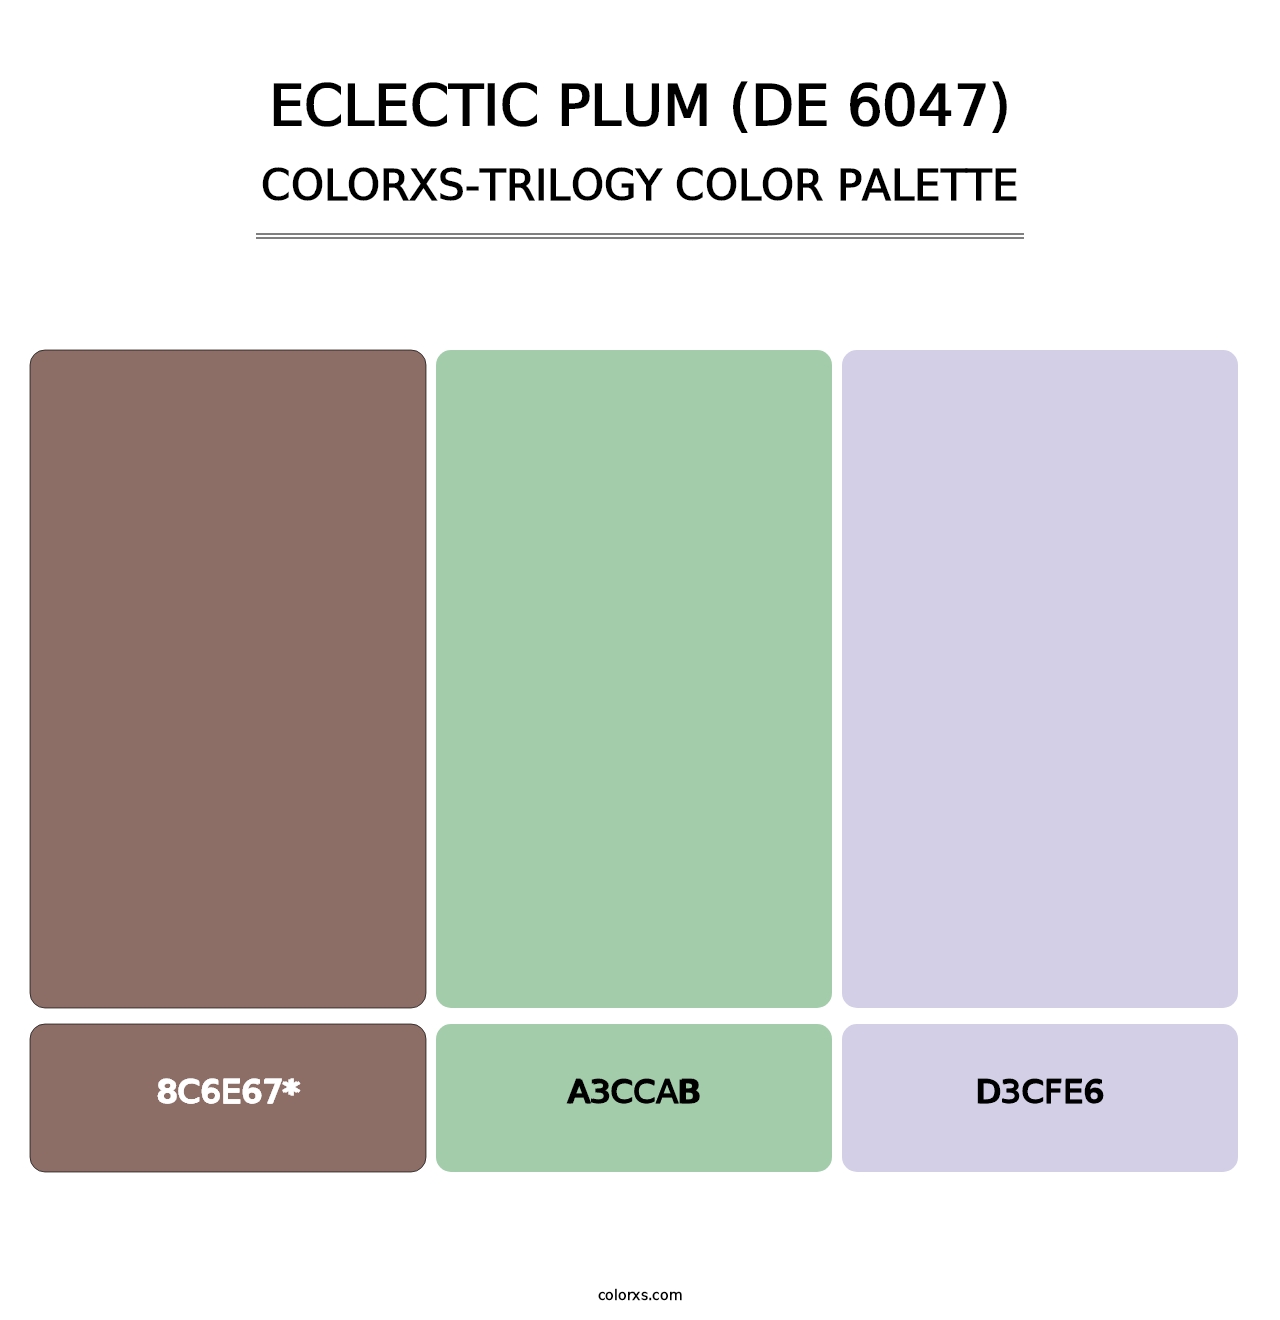 Eclectic Plum (DE 6047) - Colorxs Trilogy Palette